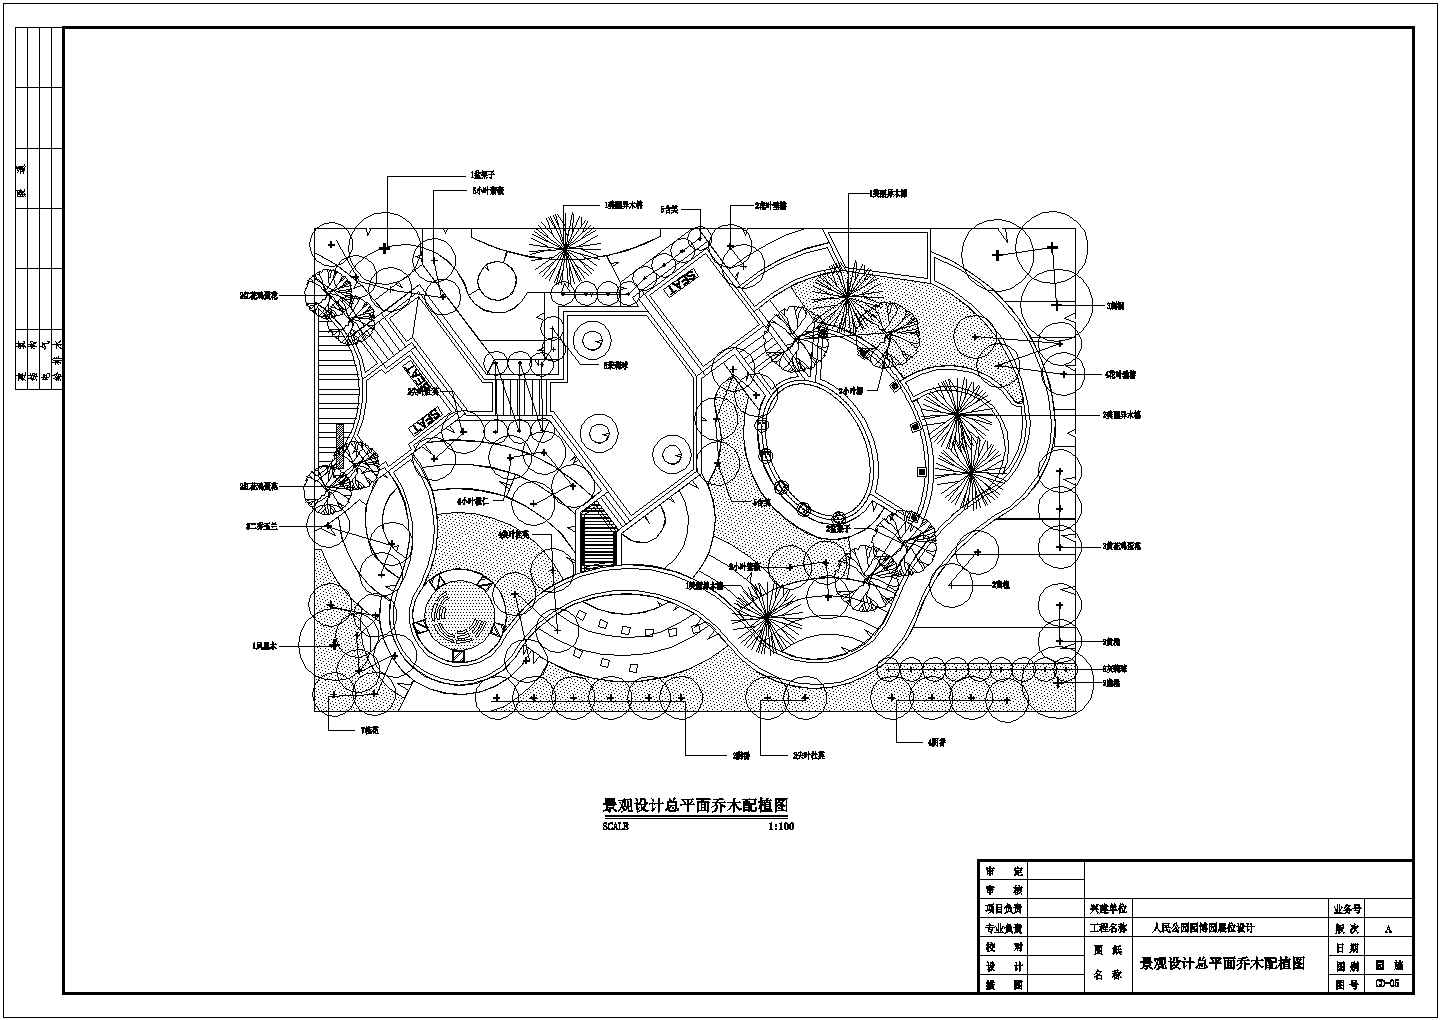 某园林花卉博览会人民公园CAD施工图总平面乔木